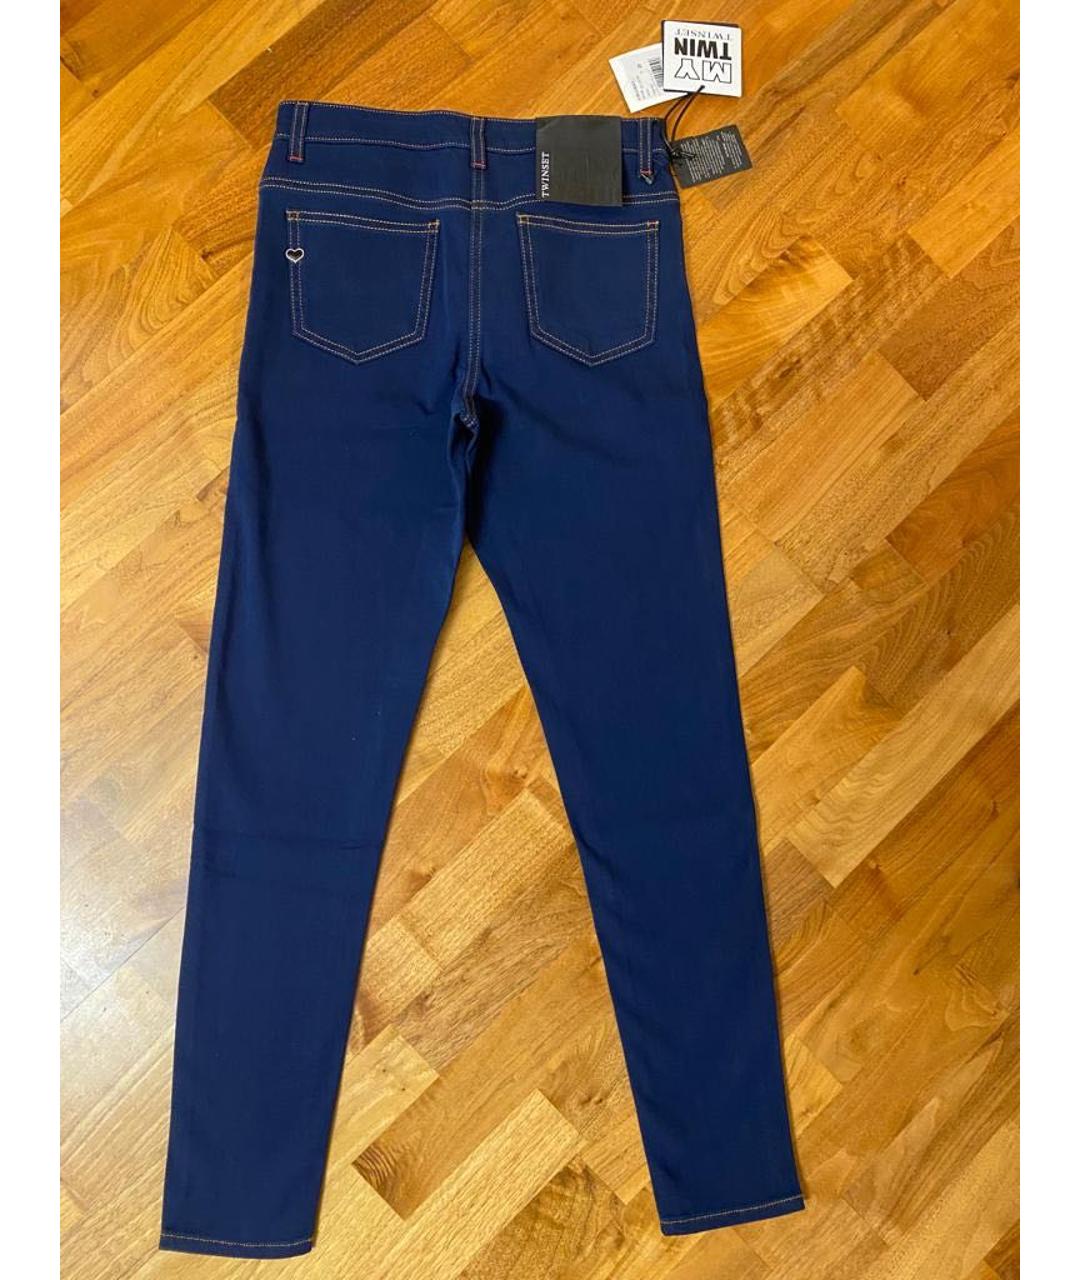 TWIN-SET Синие хлопок-полиэтиленовые джинсы слим, фото 2